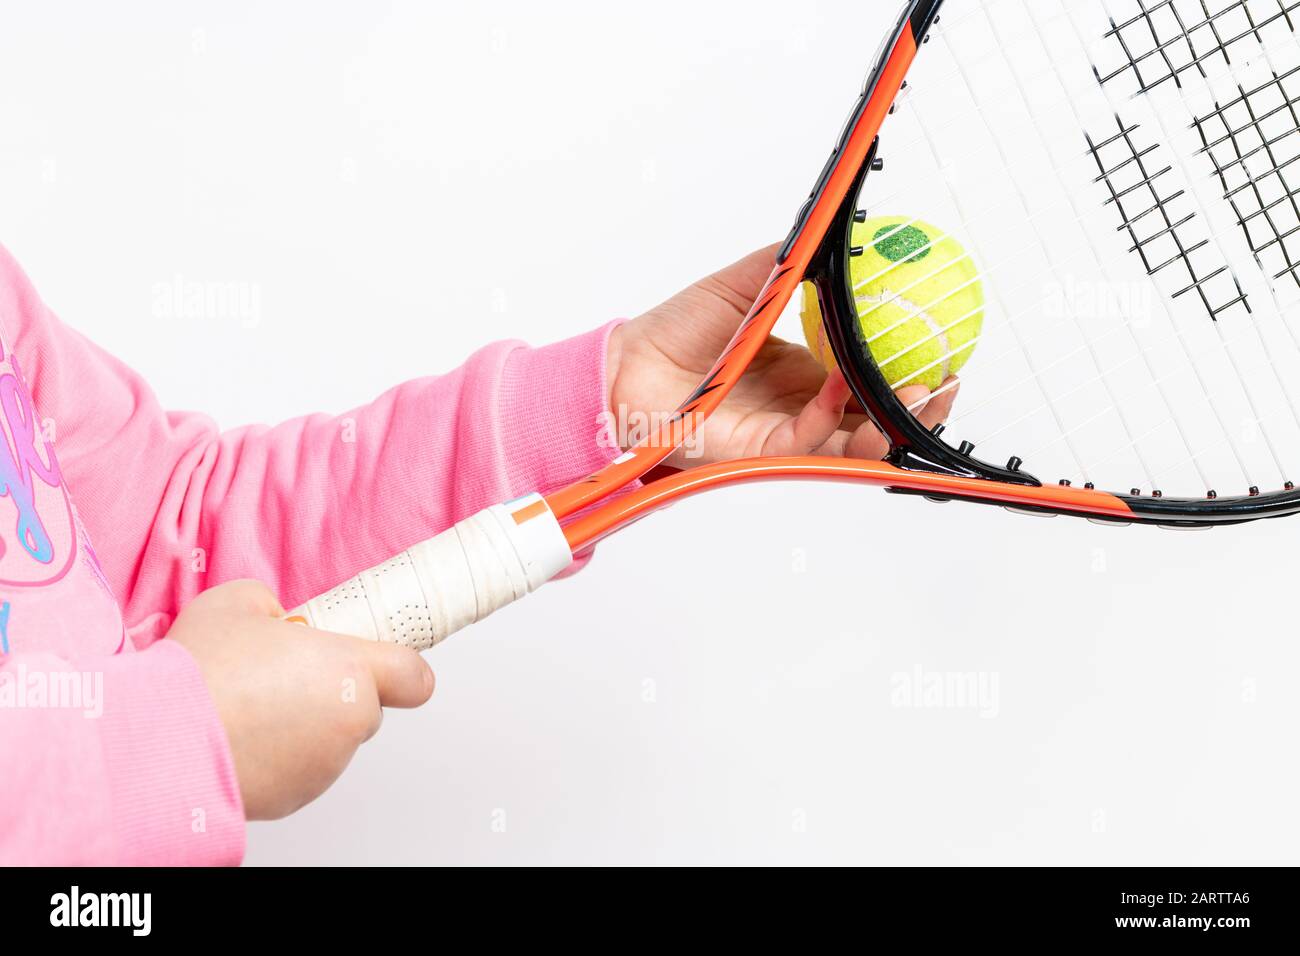 Una chica que lleva una sudadera de color rosa sostiene la raqueta de tenis y la pelota de tenis sobre fondo blanco Foto de stock